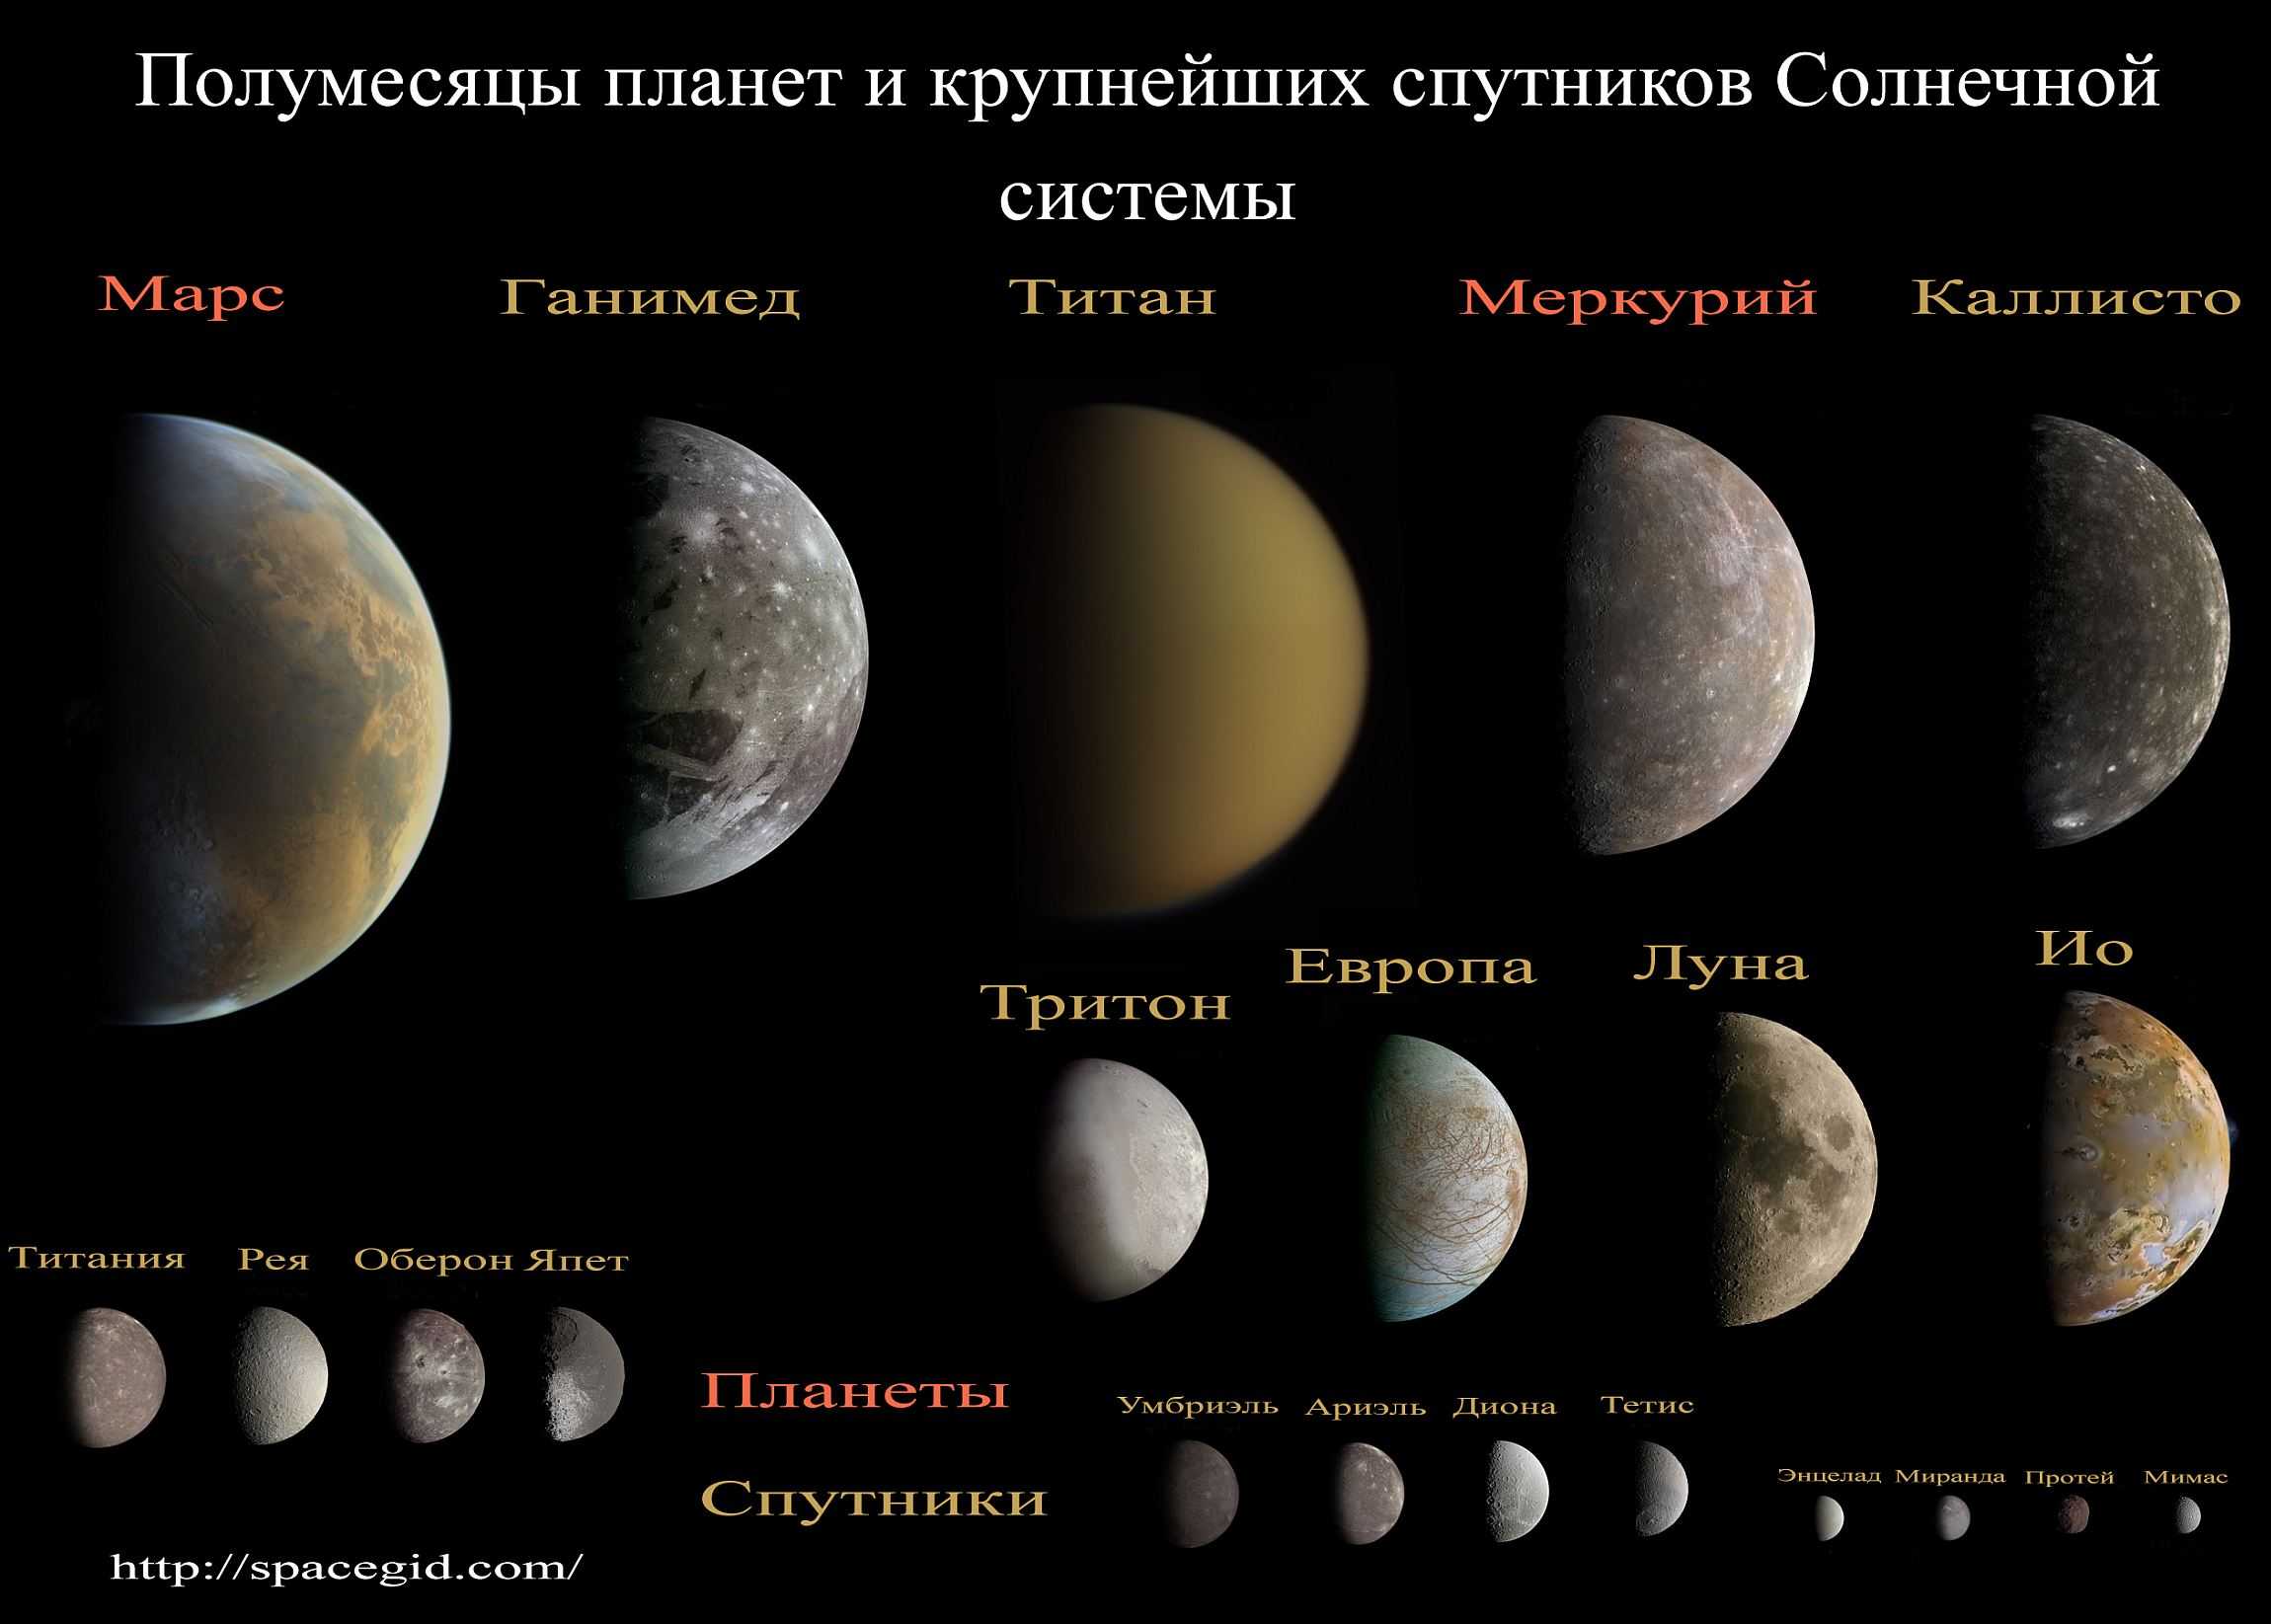 Луна с большой или маленькой. Спутники планет солнечной системы. Солнечная система спутники планет солнечной системы. Спутники планет нашей солнечной системы. Солнечная система это планеты солнечной системы со спутниками.